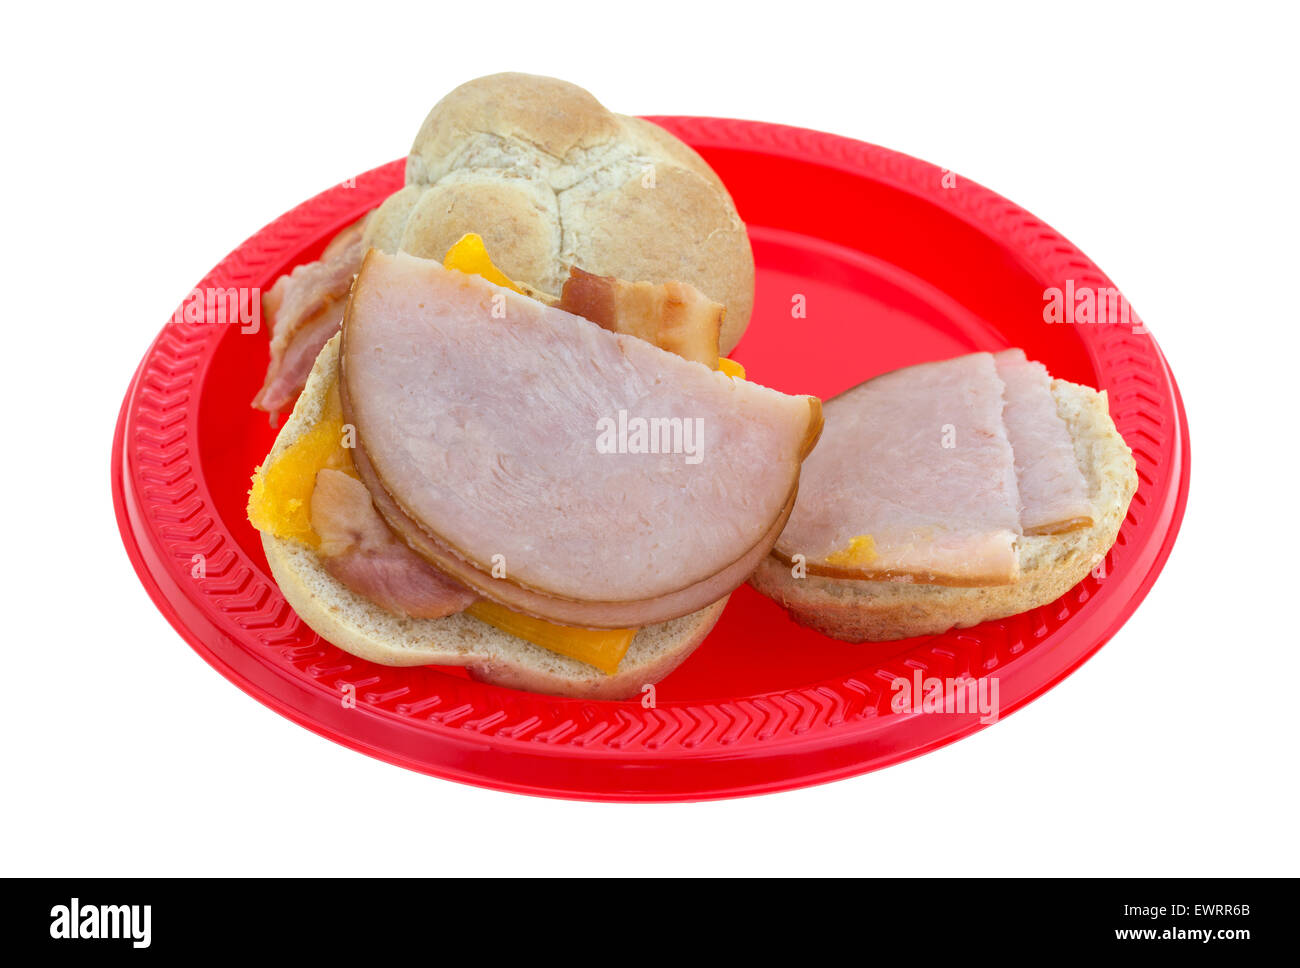 Seitenansicht des kleinen Truthahn-Sandwiches mit Speck und Cheddar Käse auf einem roten Picknick Teller geöffnet. Stockfoto